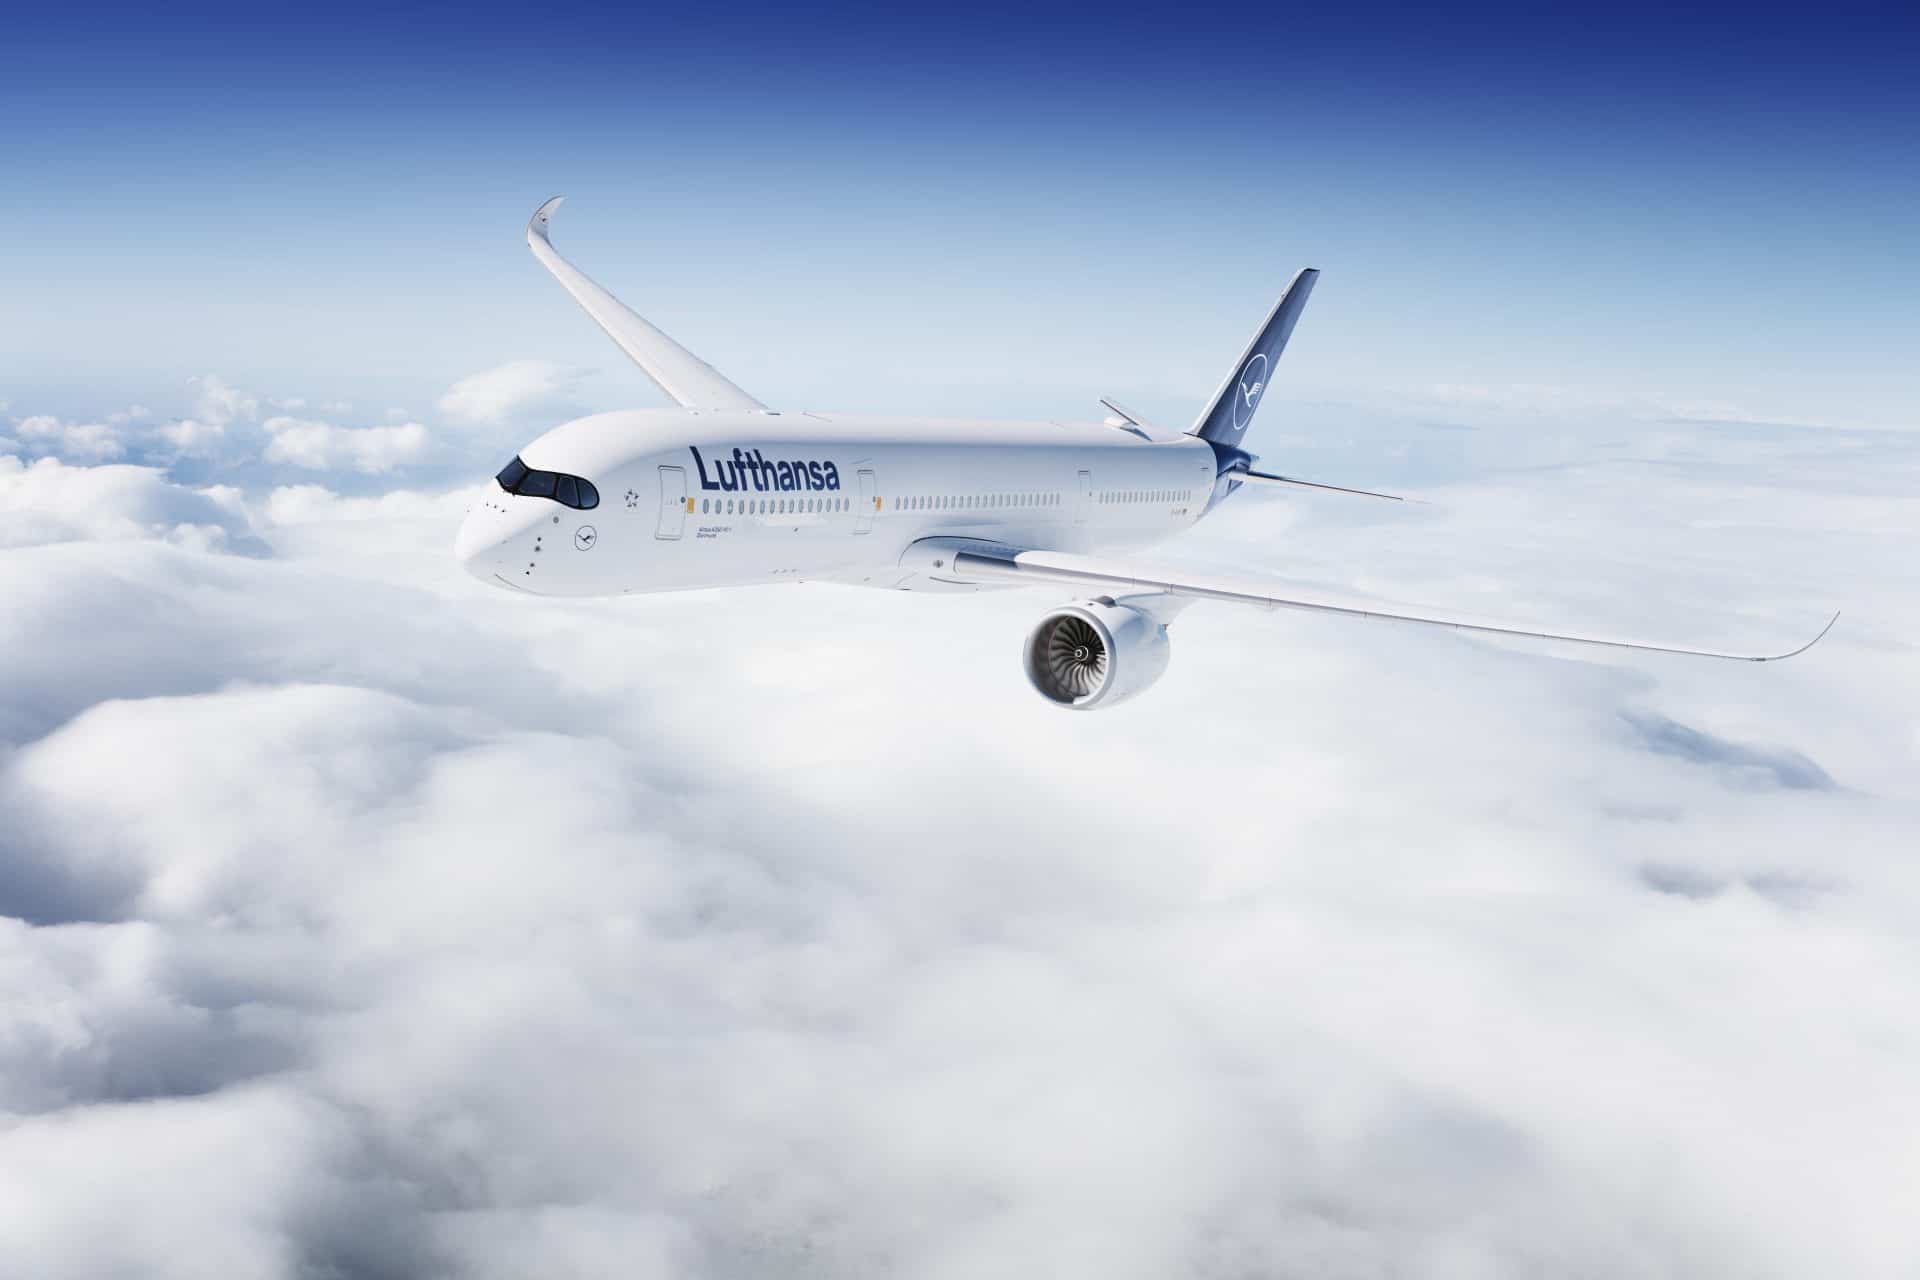 Î‘Ï€Î¿Ï„Î­Î»ÎµÏƒÎ¼Î± ÎµÎ¹ÎºÏŒÎ½Î±Ï‚ Î³Î¹Î± Expedia Group and Lufthansa partner to offer even more special offers